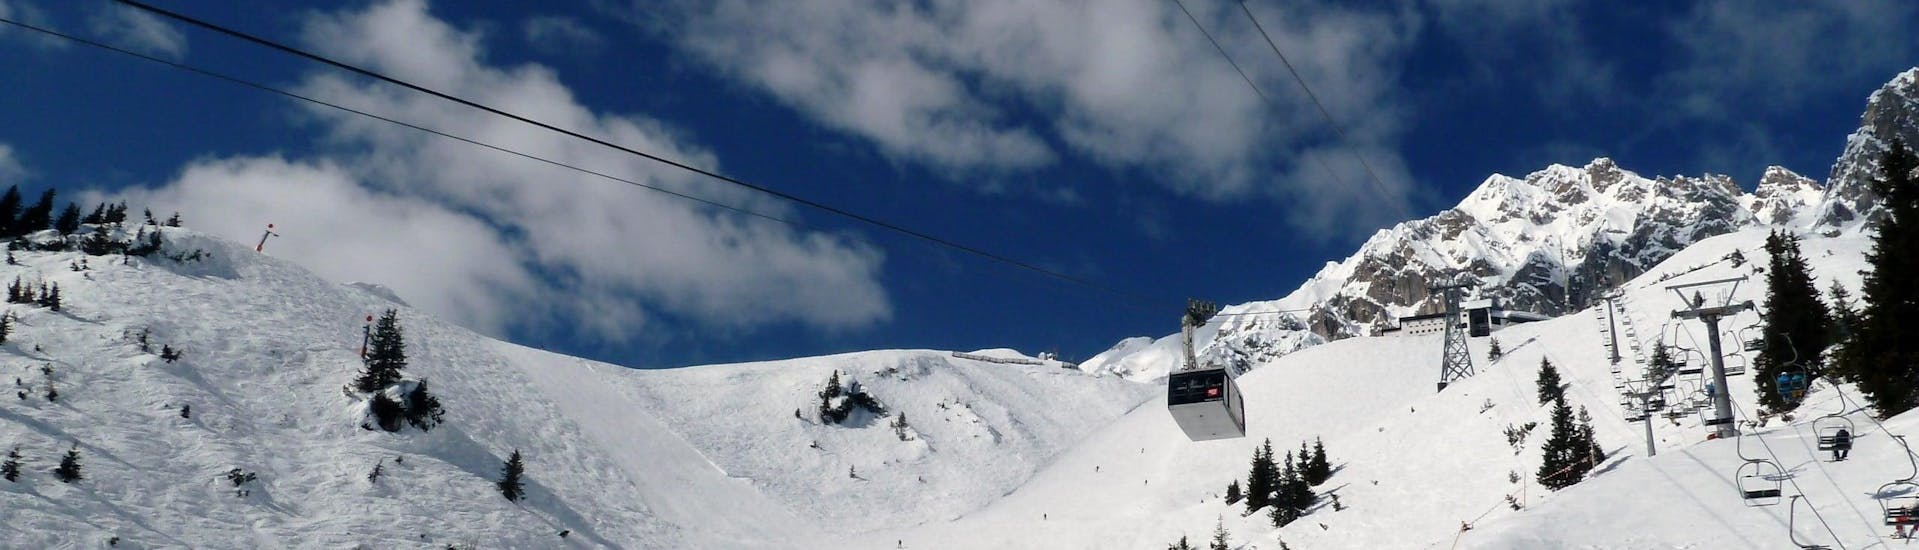 Ausblick auf die sonnige Berglandschaft beim Skifahren lernen mit den Skischulen auf der Nordkette.